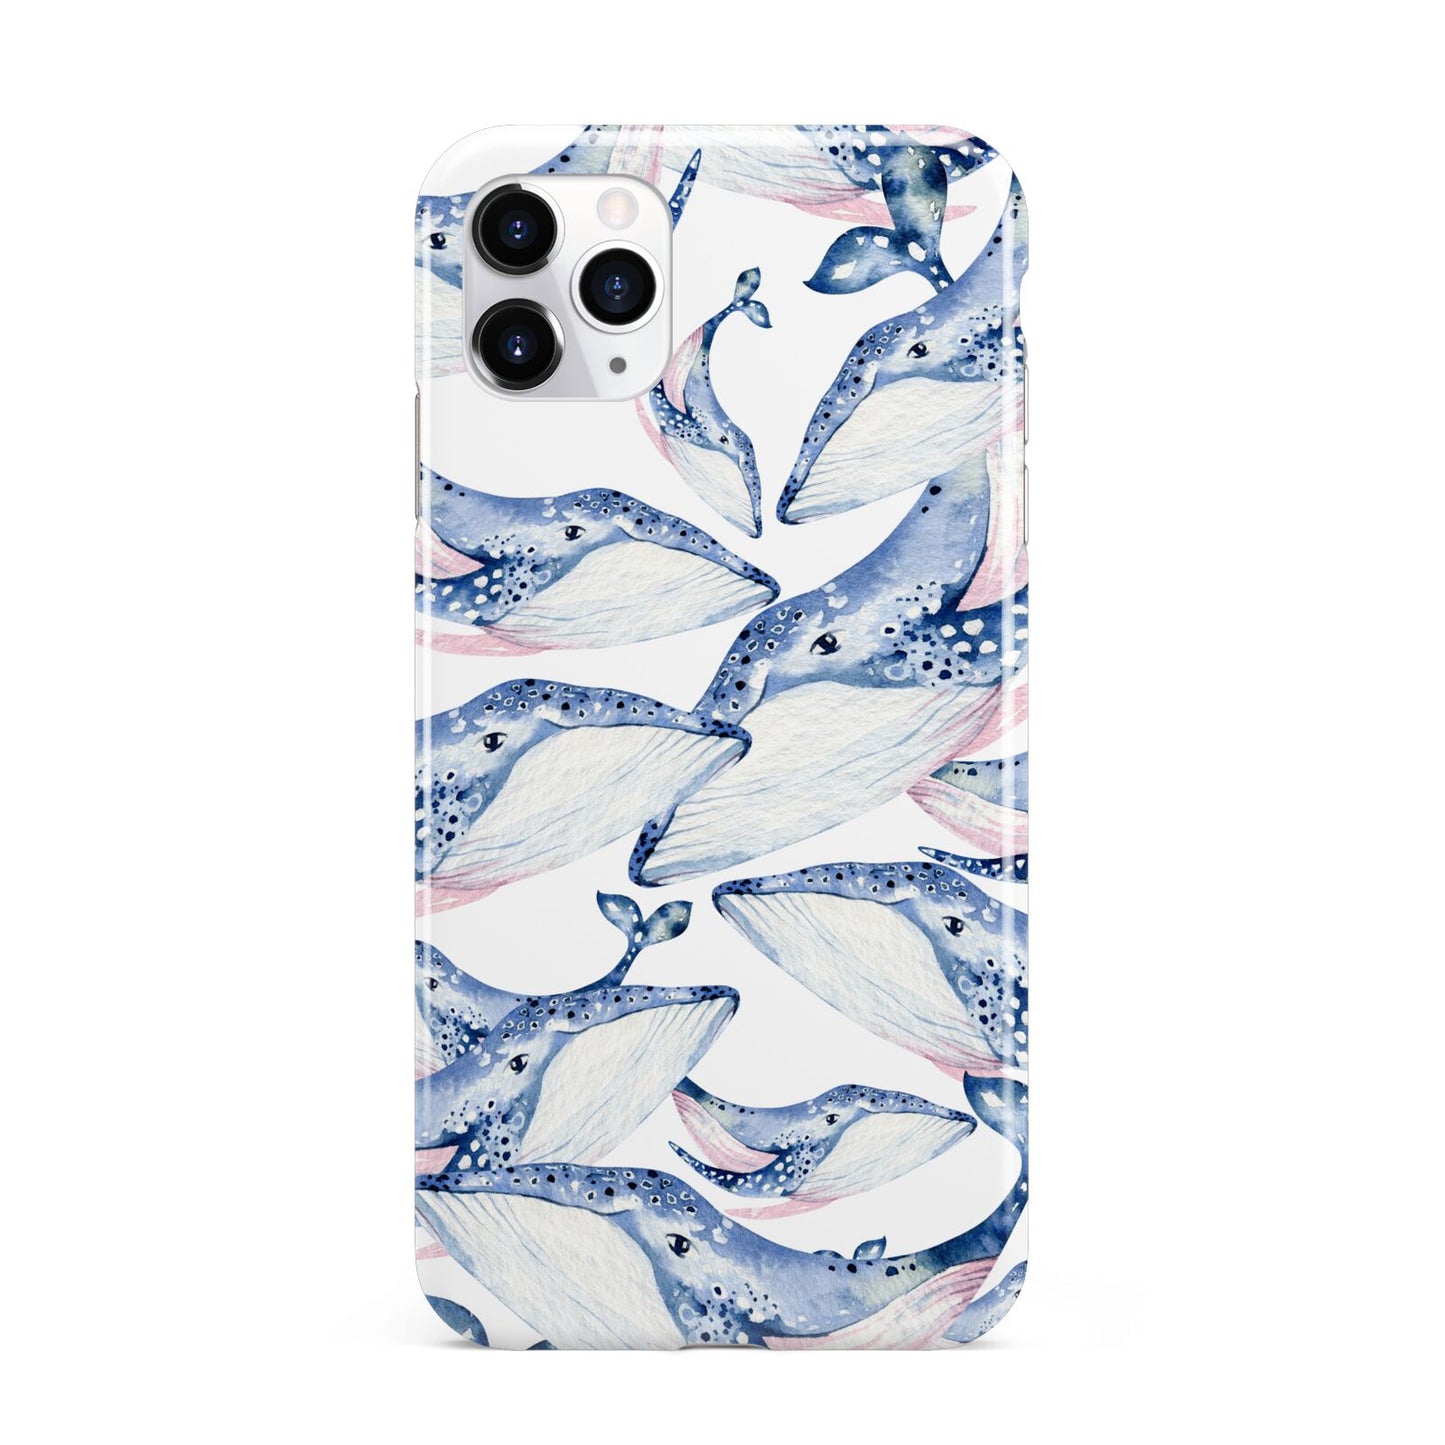 Whale iPhone 11 Pro Max 3D Tough Case